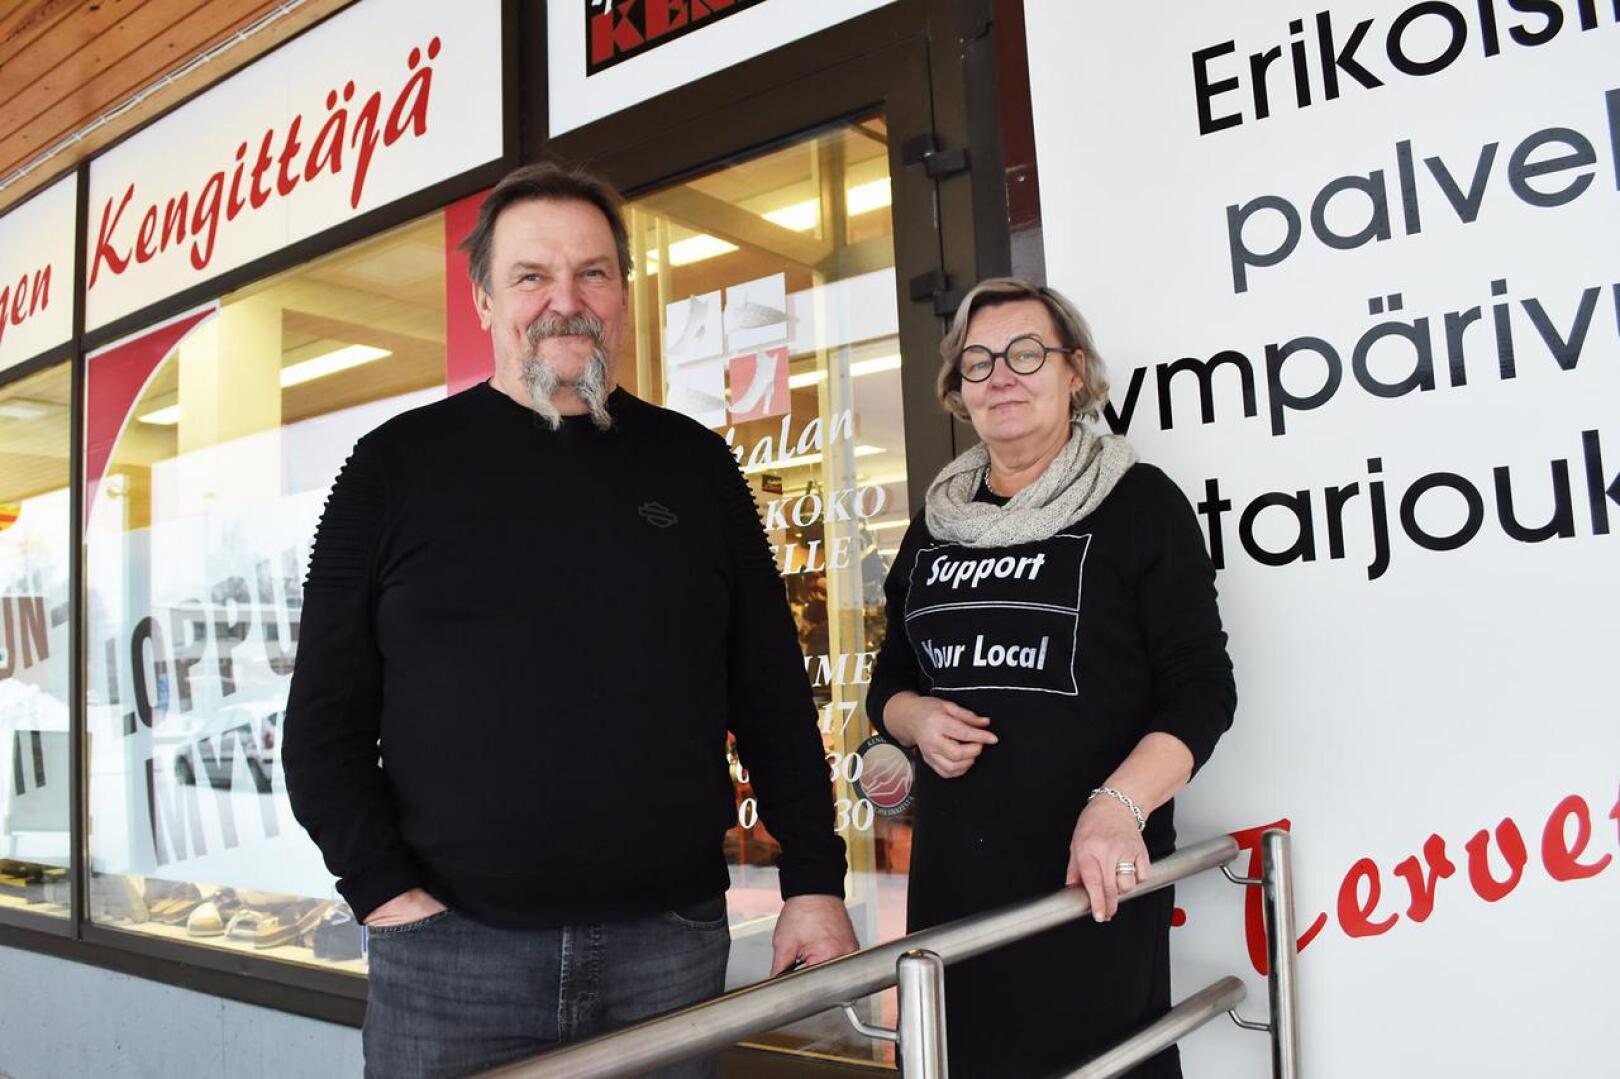 Kenkäkauppa on ollut Jorma ja Pirjo Honkalalle kuin koti 38 vuotta. Pirjo tuumii, että Pulkkilantien varastomyymälästä tulee sitten se seuraava koti. Tilojen laittelu on jo hyvässä vauhdissa.